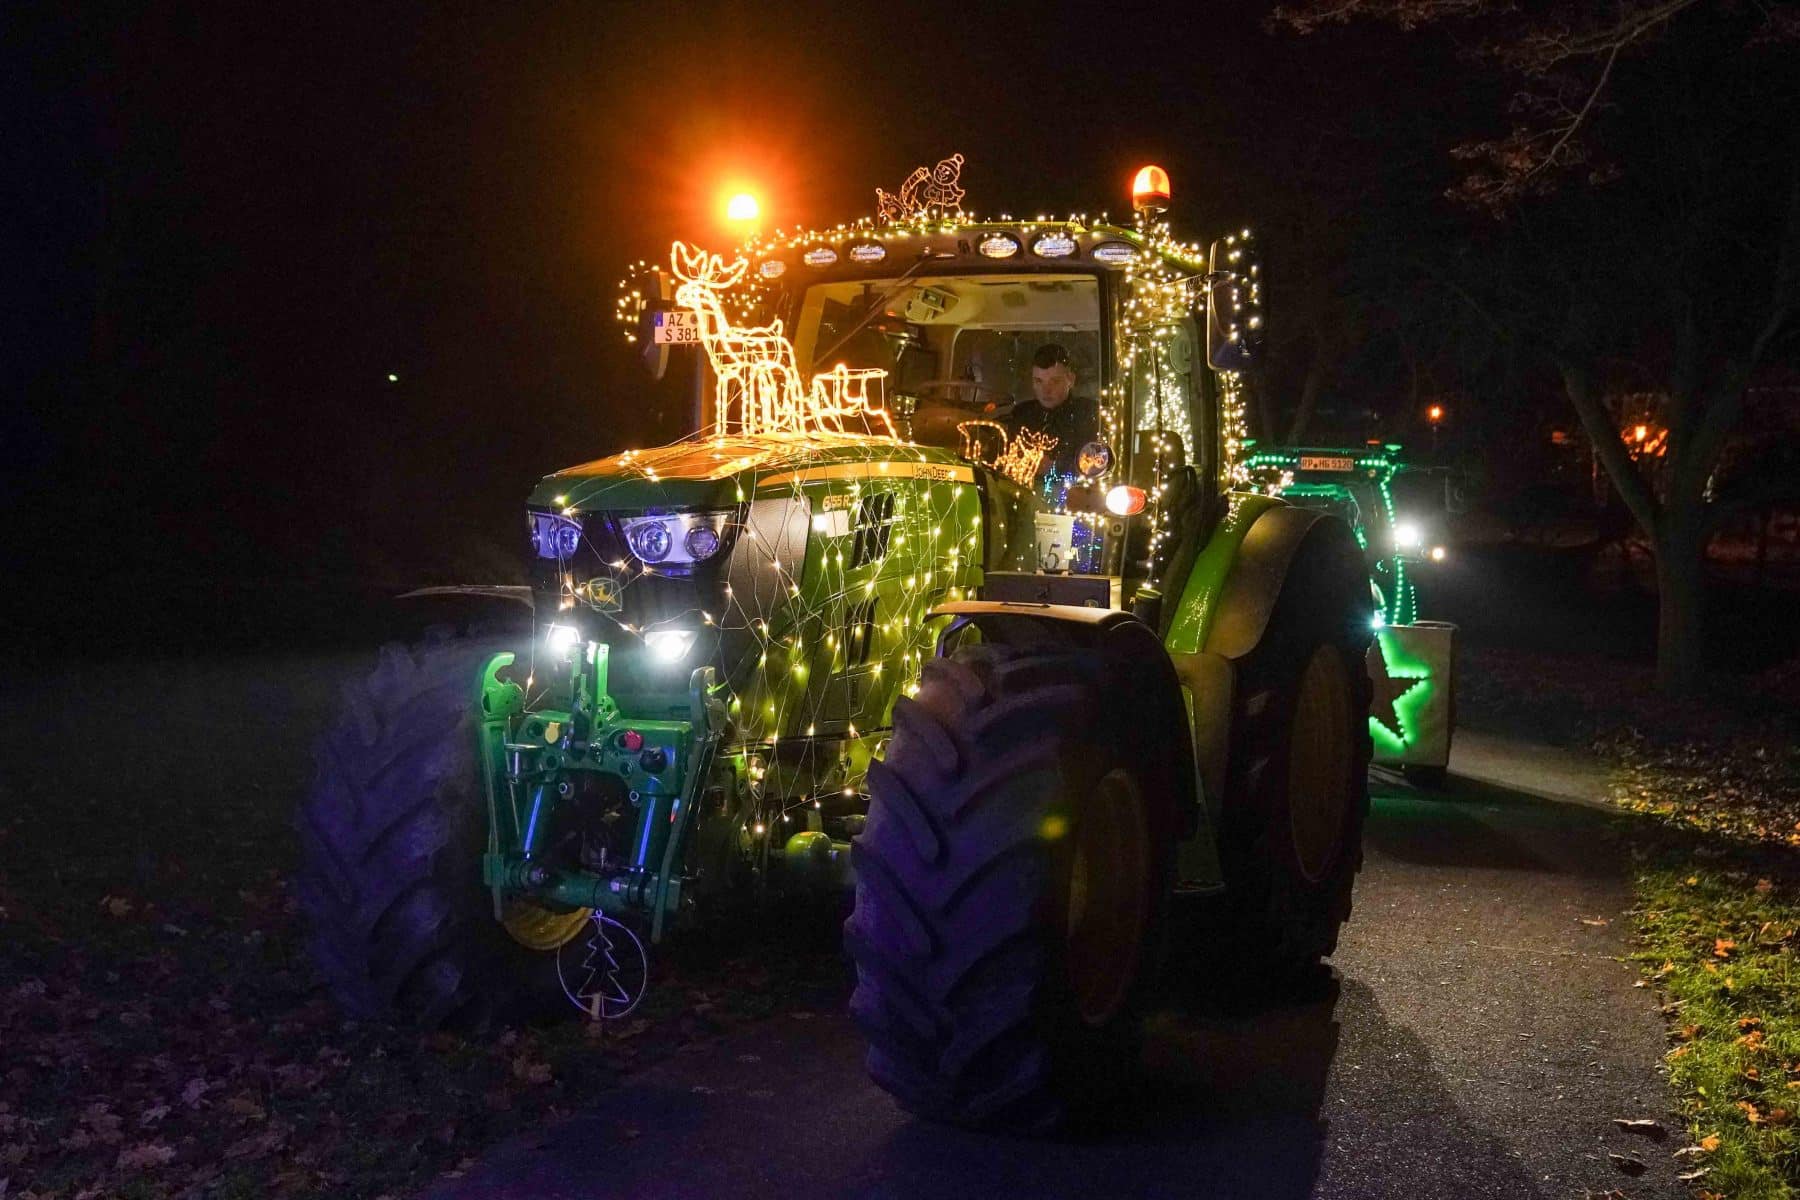 Traktoren funkeln in der Weihnachtszeit